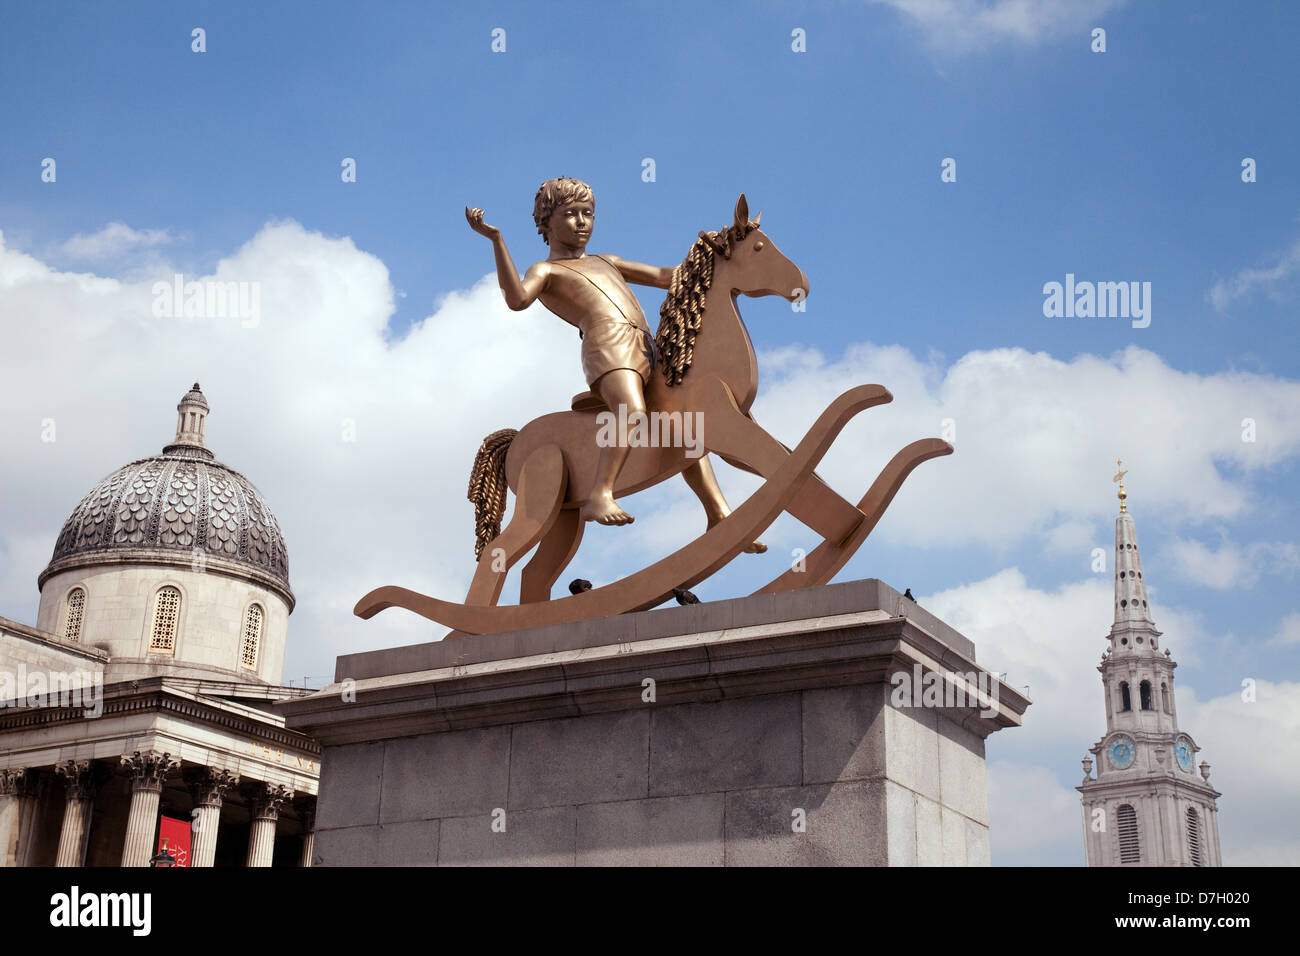 Machtlos Strukturen - eine Bronzestatue eines jungen auf einem Schaukelpferd auf dem Fourth Plinth, Trafalgar Square London UK 2013 Stockfoto